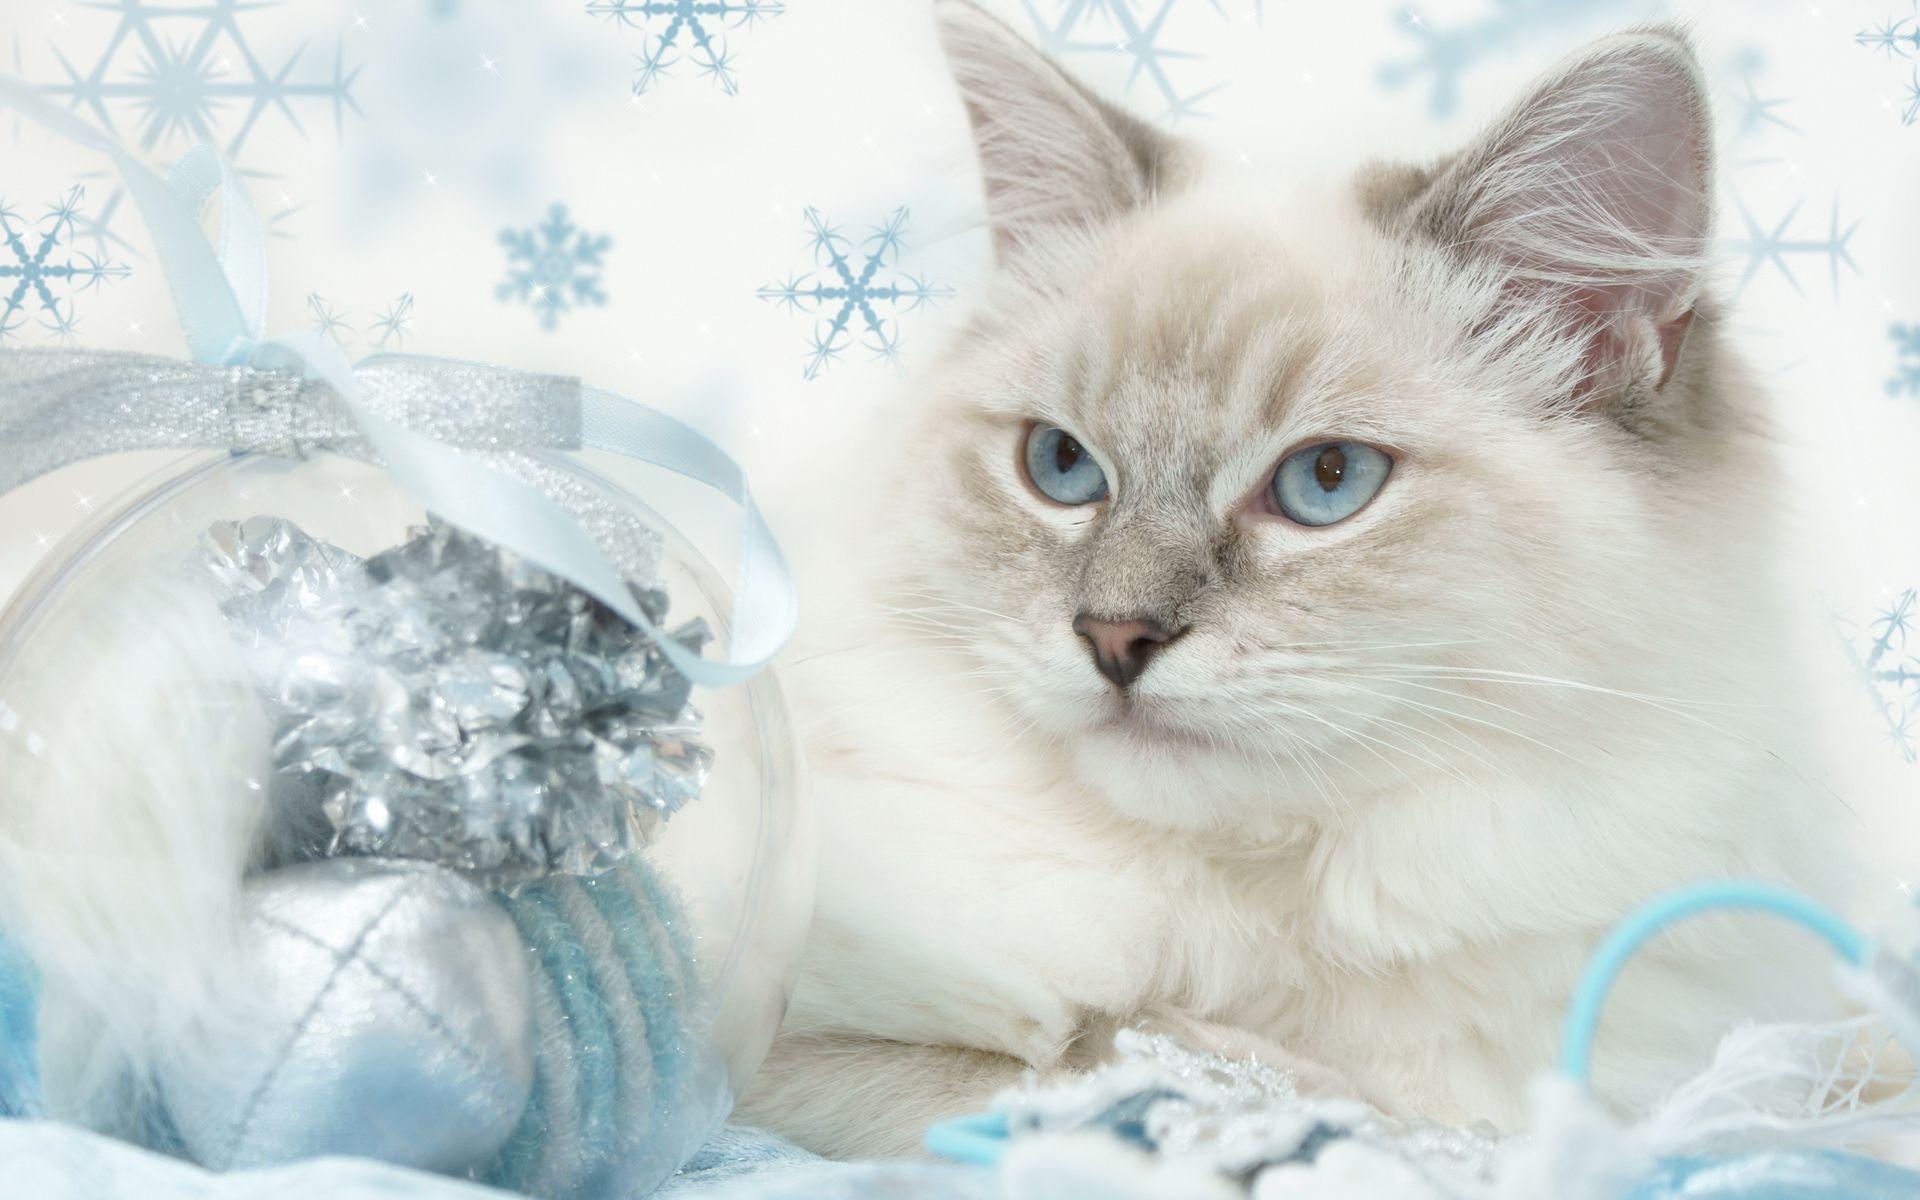 Wallpaper For > Cute Christmas Kitten Wallpaper